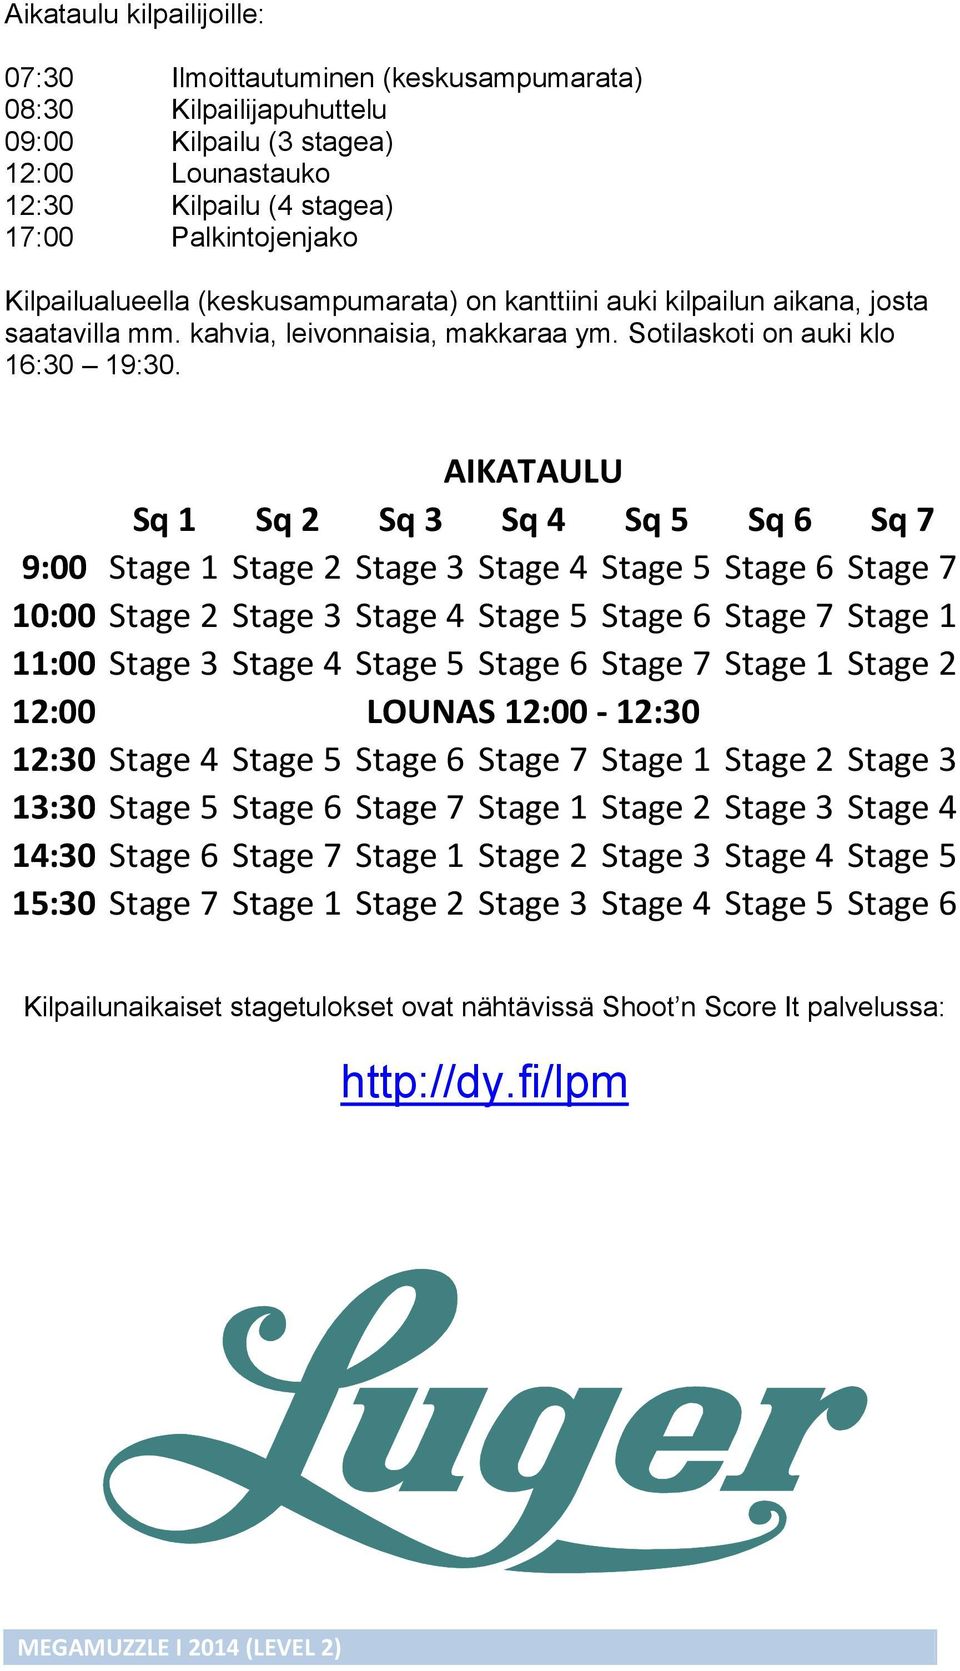 AIKATAULU Sq 1 Sq 2 Sq 3 Sq 4 Sq 5 Sq 6 Sq 7 9:00 Stage 1 Stage 2 Stage 3 Stage 4 Stage 5 Stage 6 Stage 7 10:00 Stage 2 Stage 3 Stage 4 Stage 5 Stage 6 Stage 7 Stage 1 11:00 Stage 3 Stage 4 Stage 5